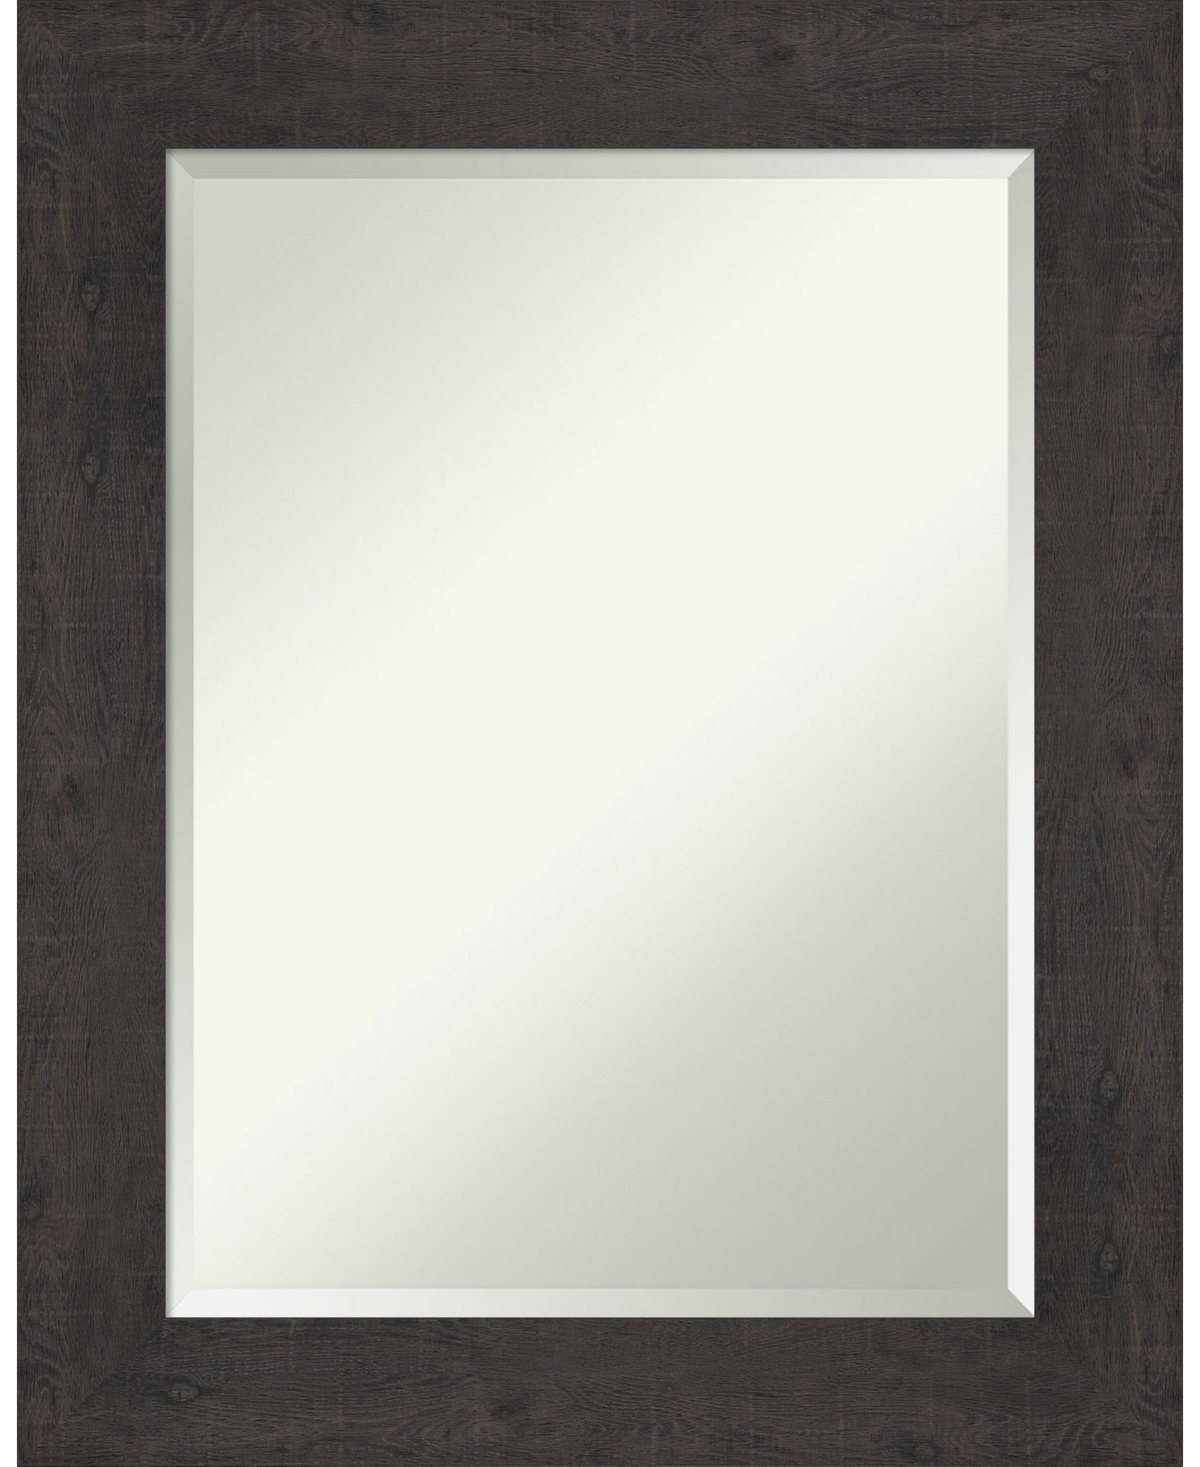 Rustic Plank Framed Bathroom Vanity Wall Mirror, 23.38" x 29.38" - Dark Brown